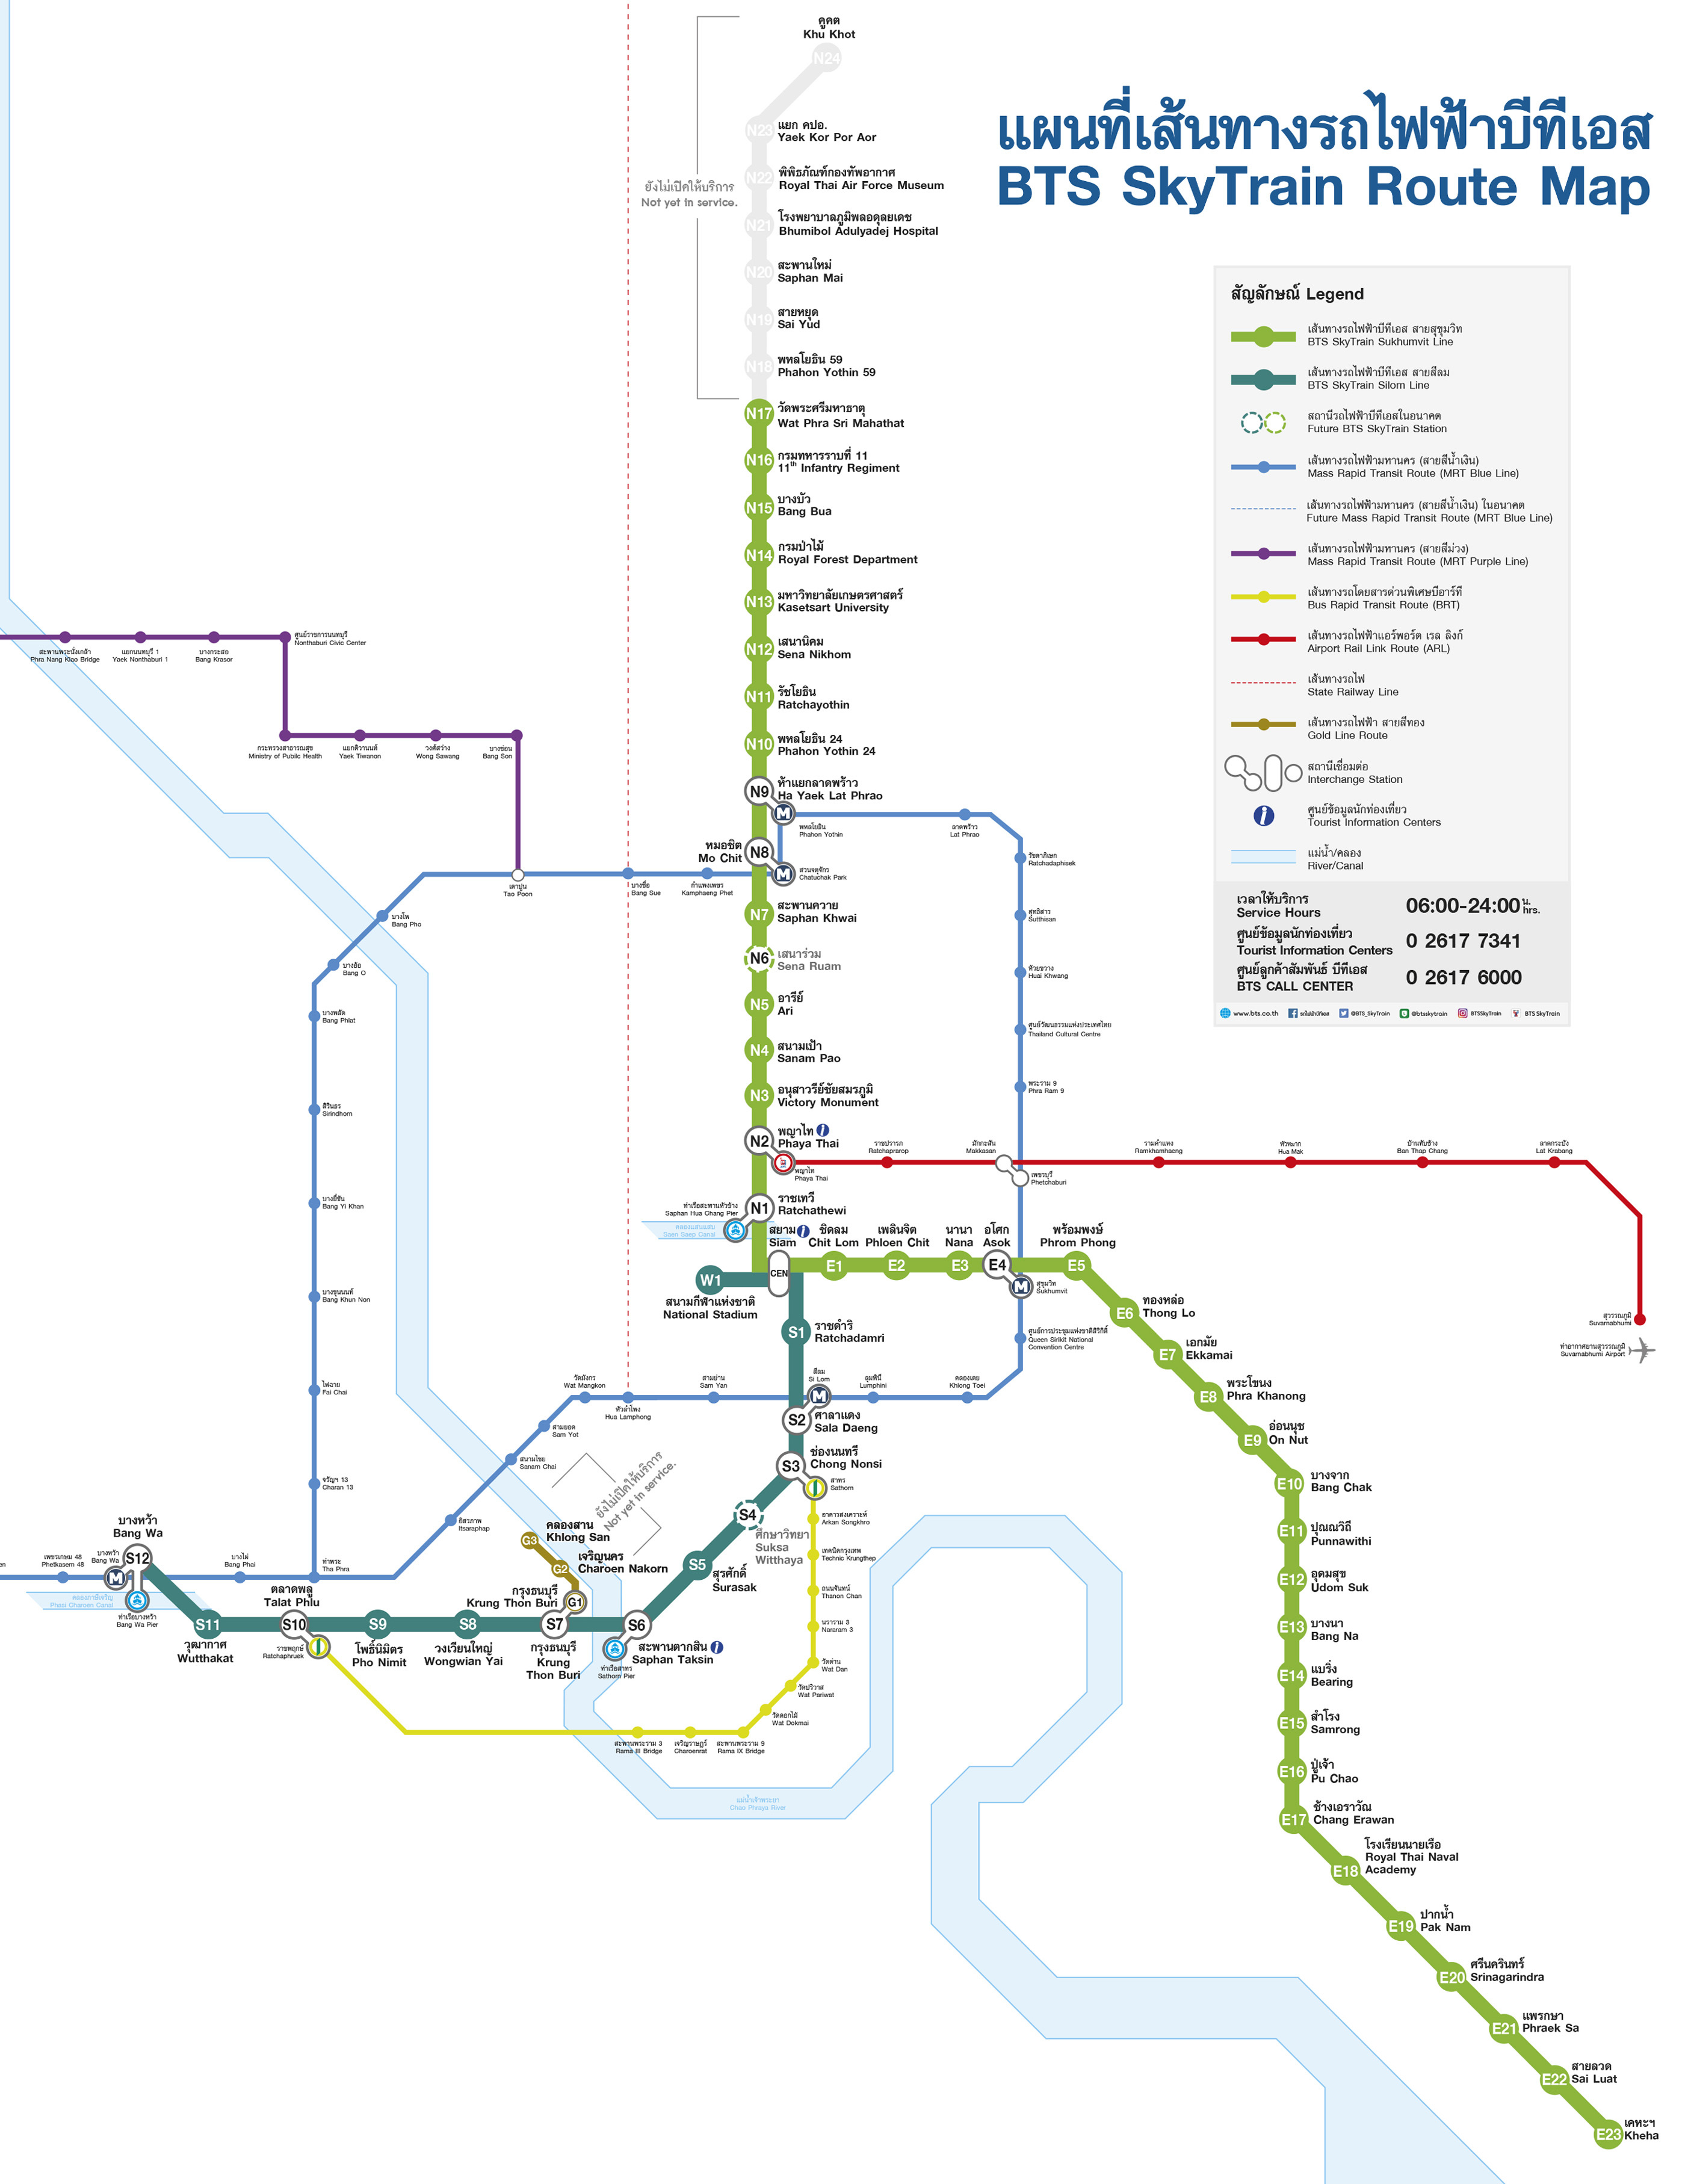 BTS捷運路線圖2020年9月版本.jpg